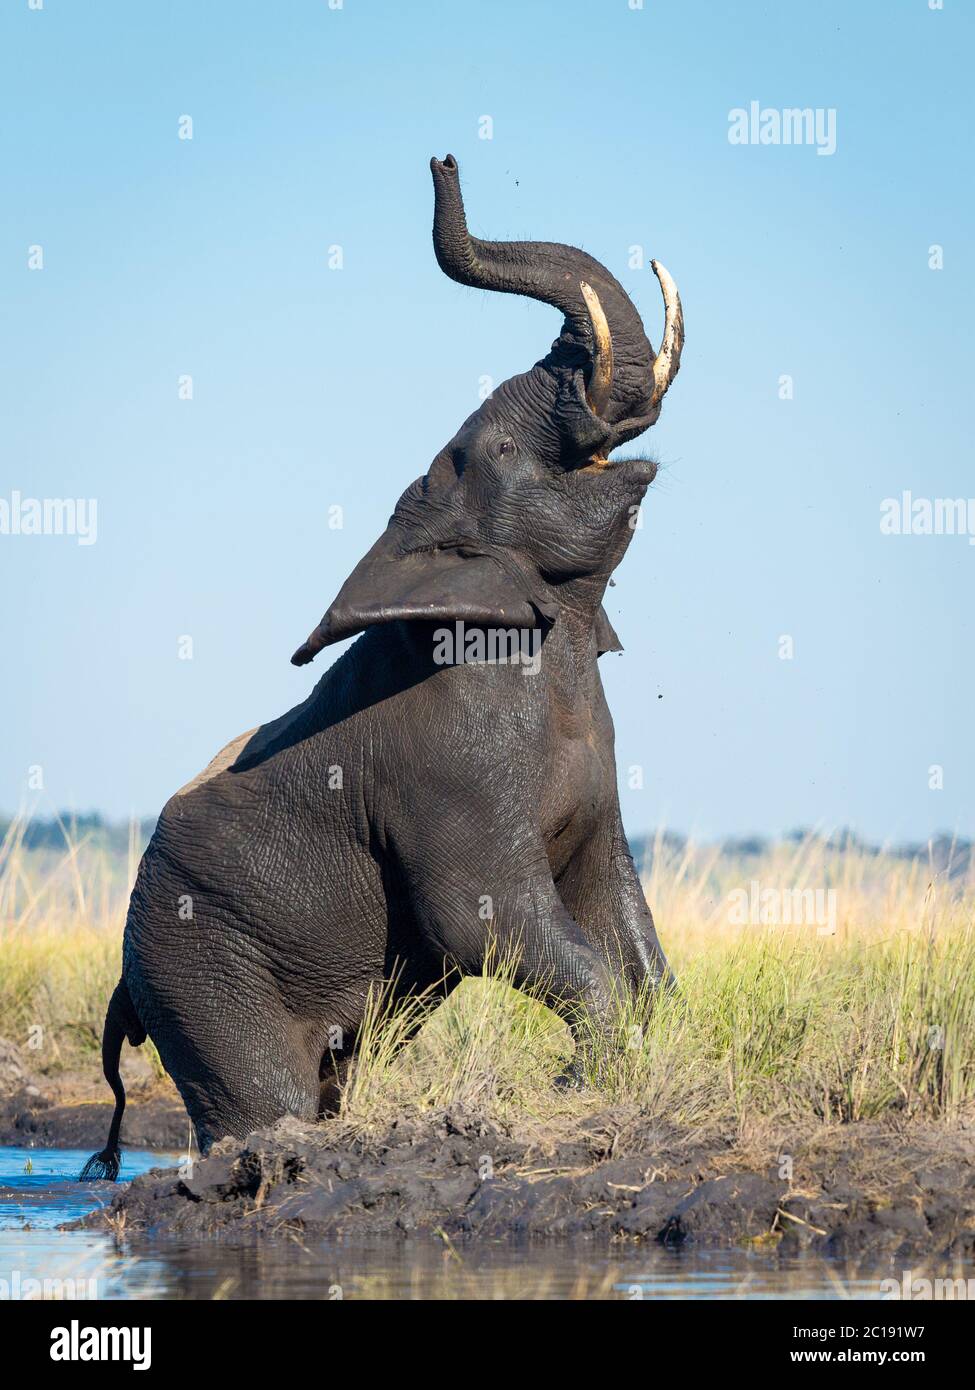 Vertikales Bild eines Elefanten, der am Rande des Chobe River steht, mit seinem Rüssel, der zum Himmel zeigt, und blauem Himmel im Hintergrund Stockfoto